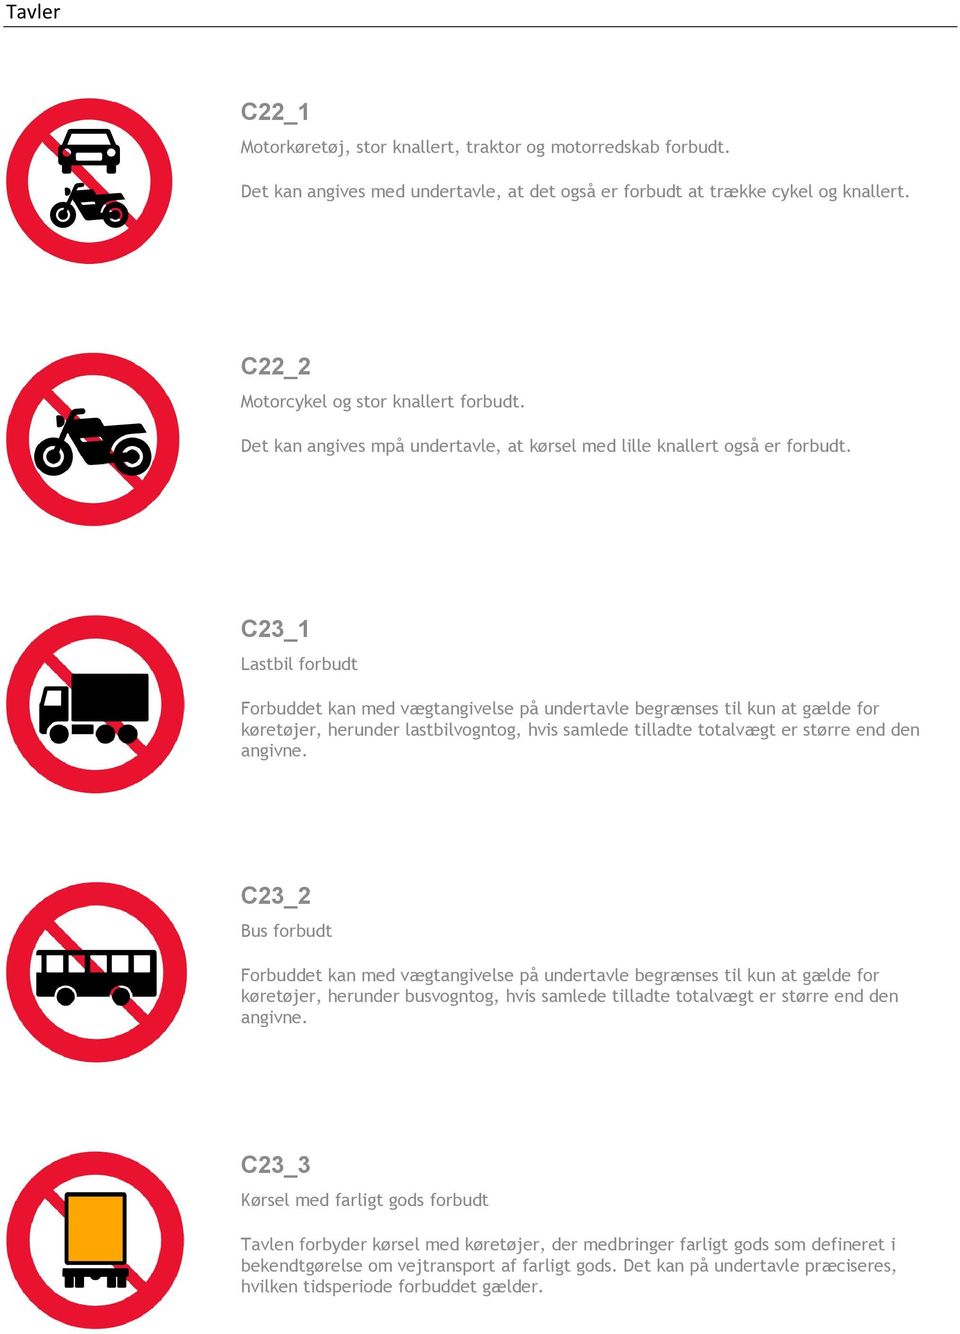 C23_1 Lastbil forbudt Forbuddet kan med vægtangivelse på undertavle begrænses til kun at gælde for køretøjer, herunder lastbilvogntog, hvis samlede tilladte totalvægt er større end den angivne.